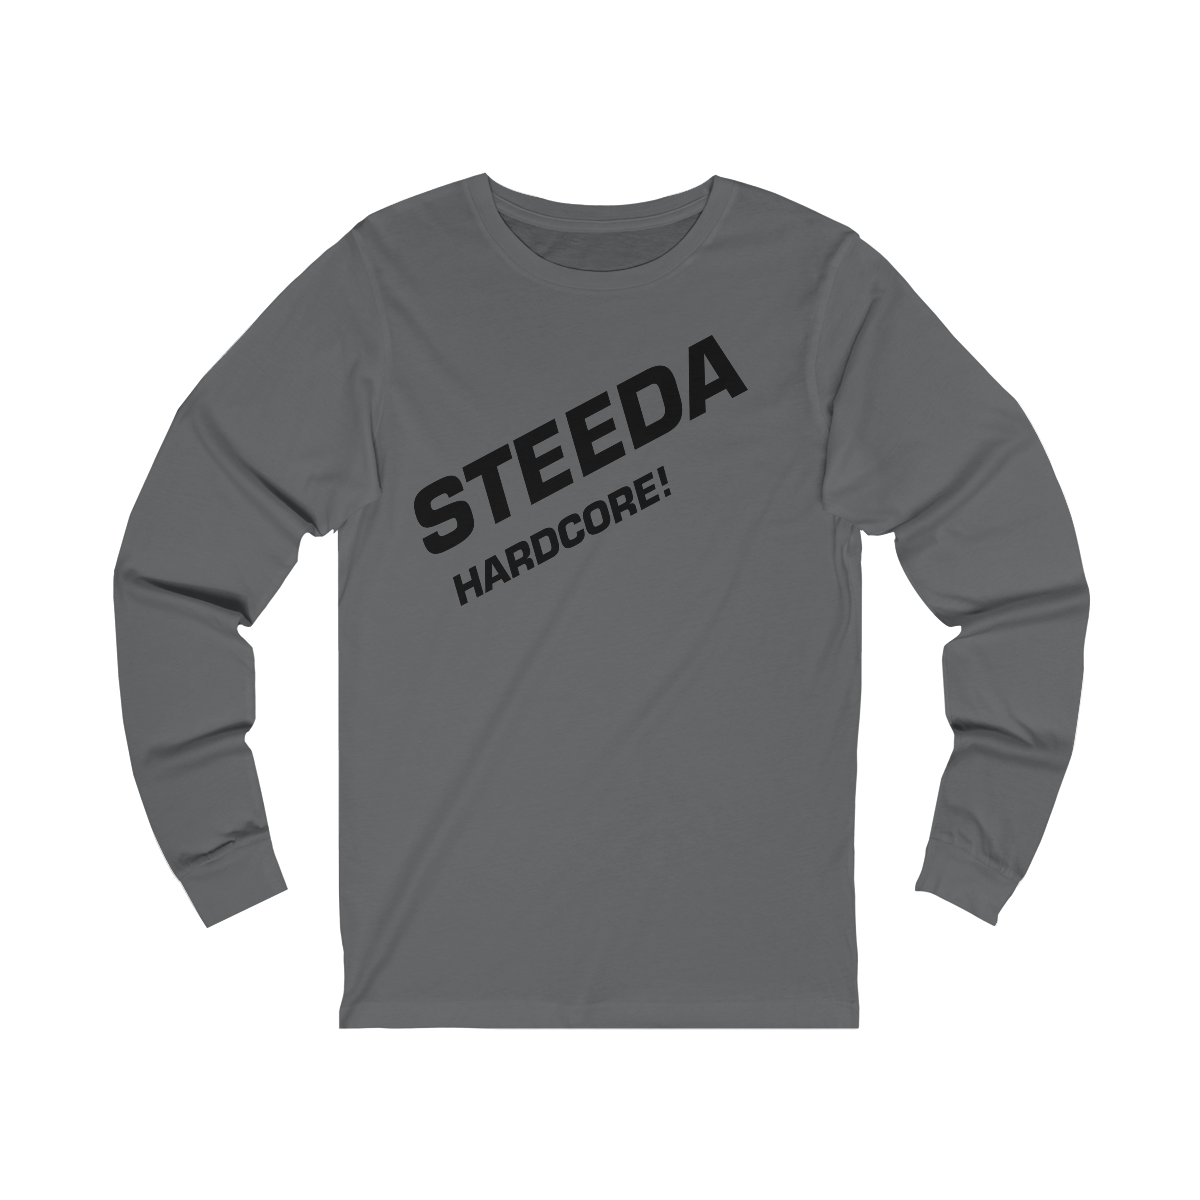 Steeda Unisexe "Hardcore!" T-shirt à manches longues - Noir / Gris